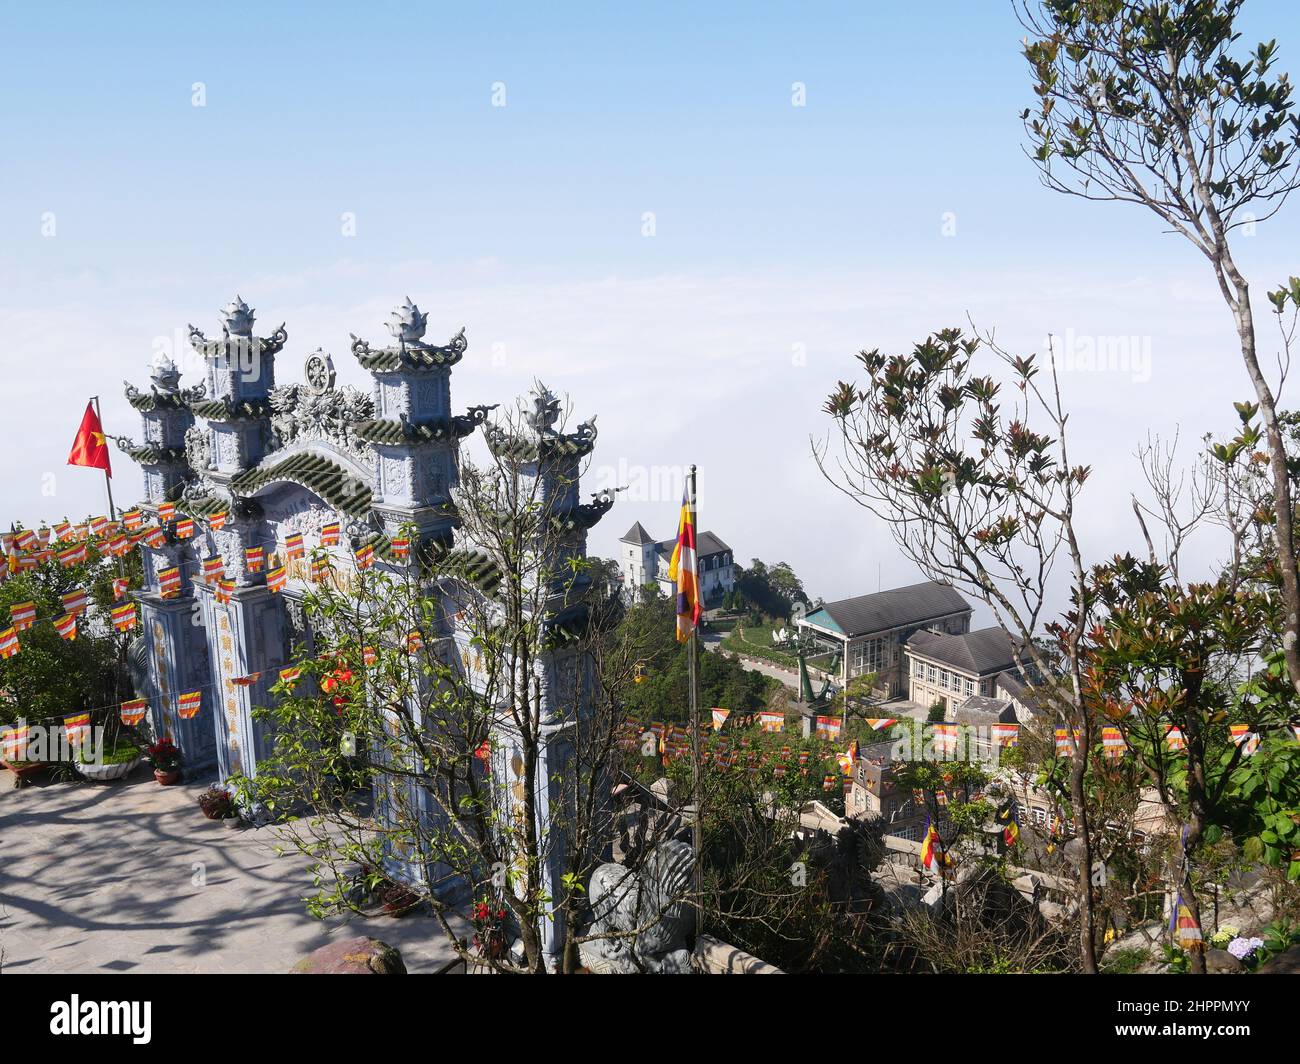 Da Nang, Vietnam - 12 aprile 2021: Tempio di Linh Ung, Chua Linh Ung a Ba Na Foto Stock